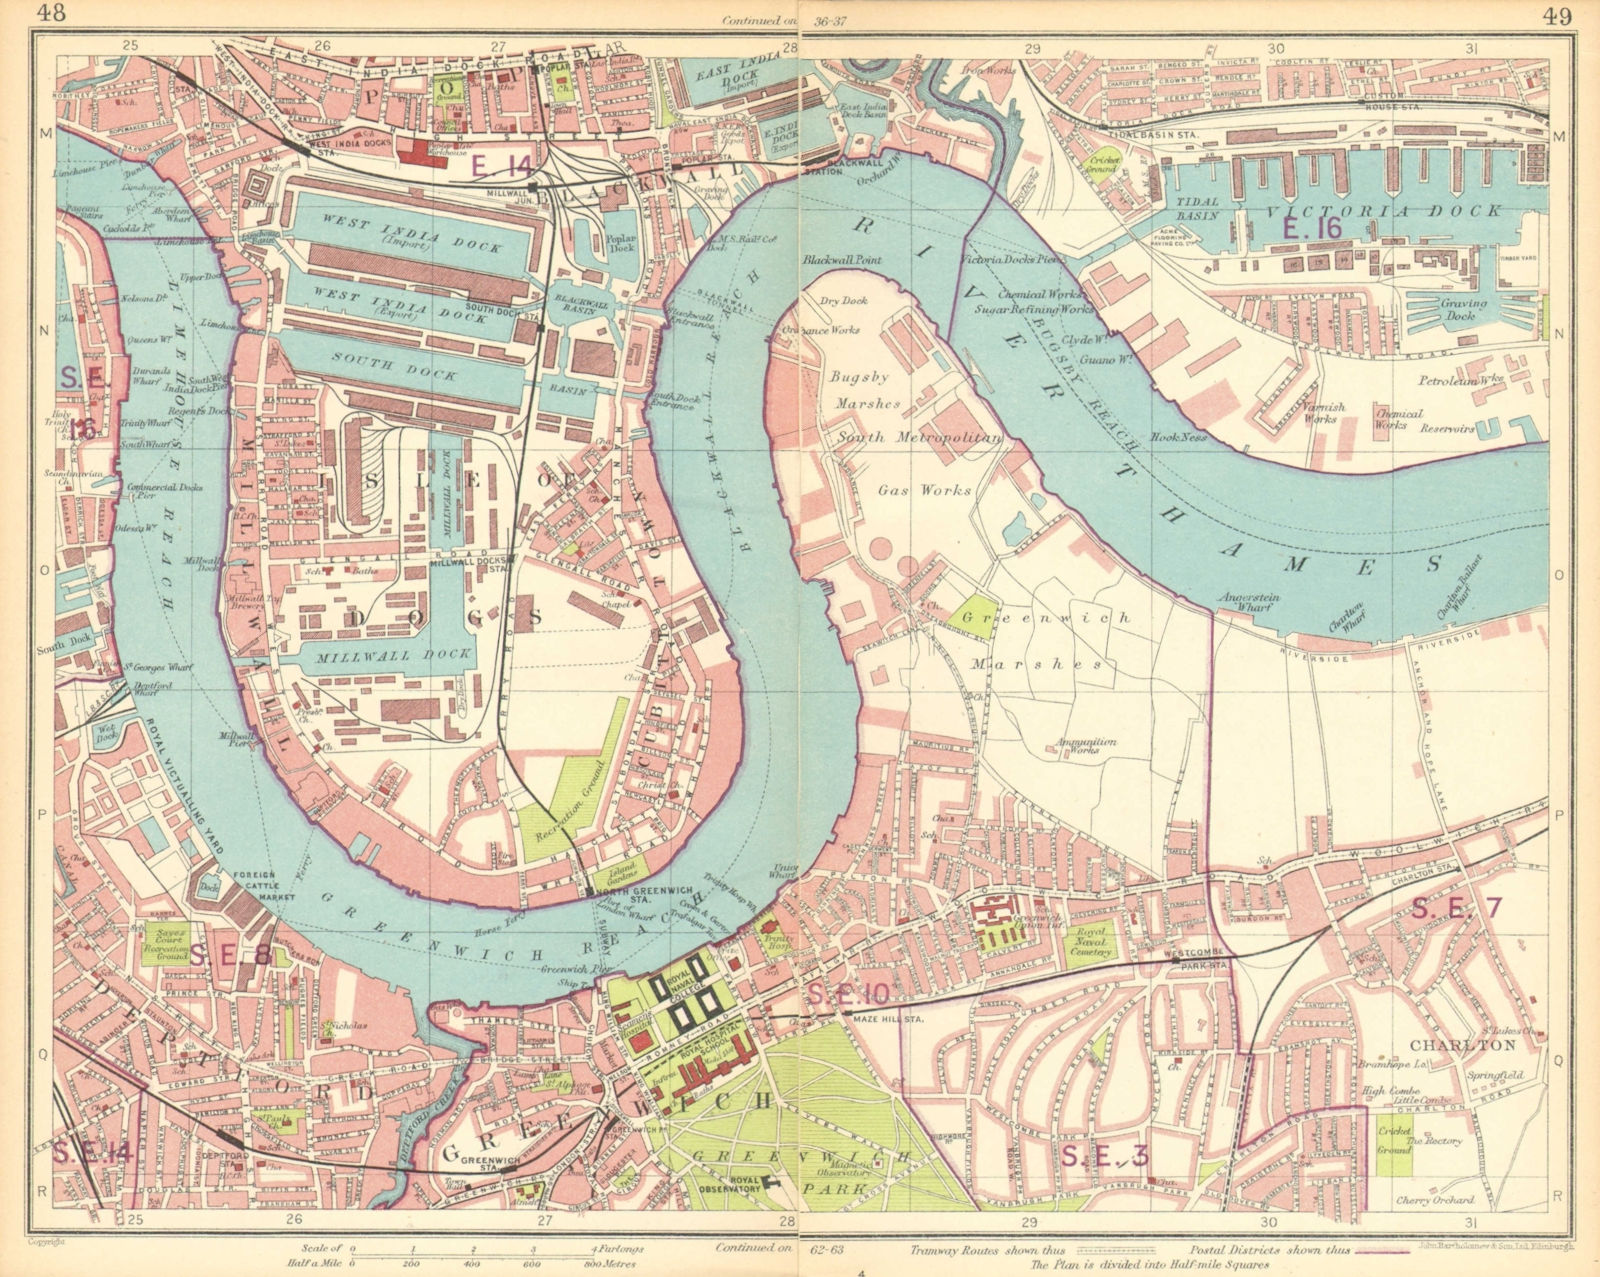 LONDON E.Isle of Dogs Blackwall Greenwich Poplar Surrey Docks 1930 old map